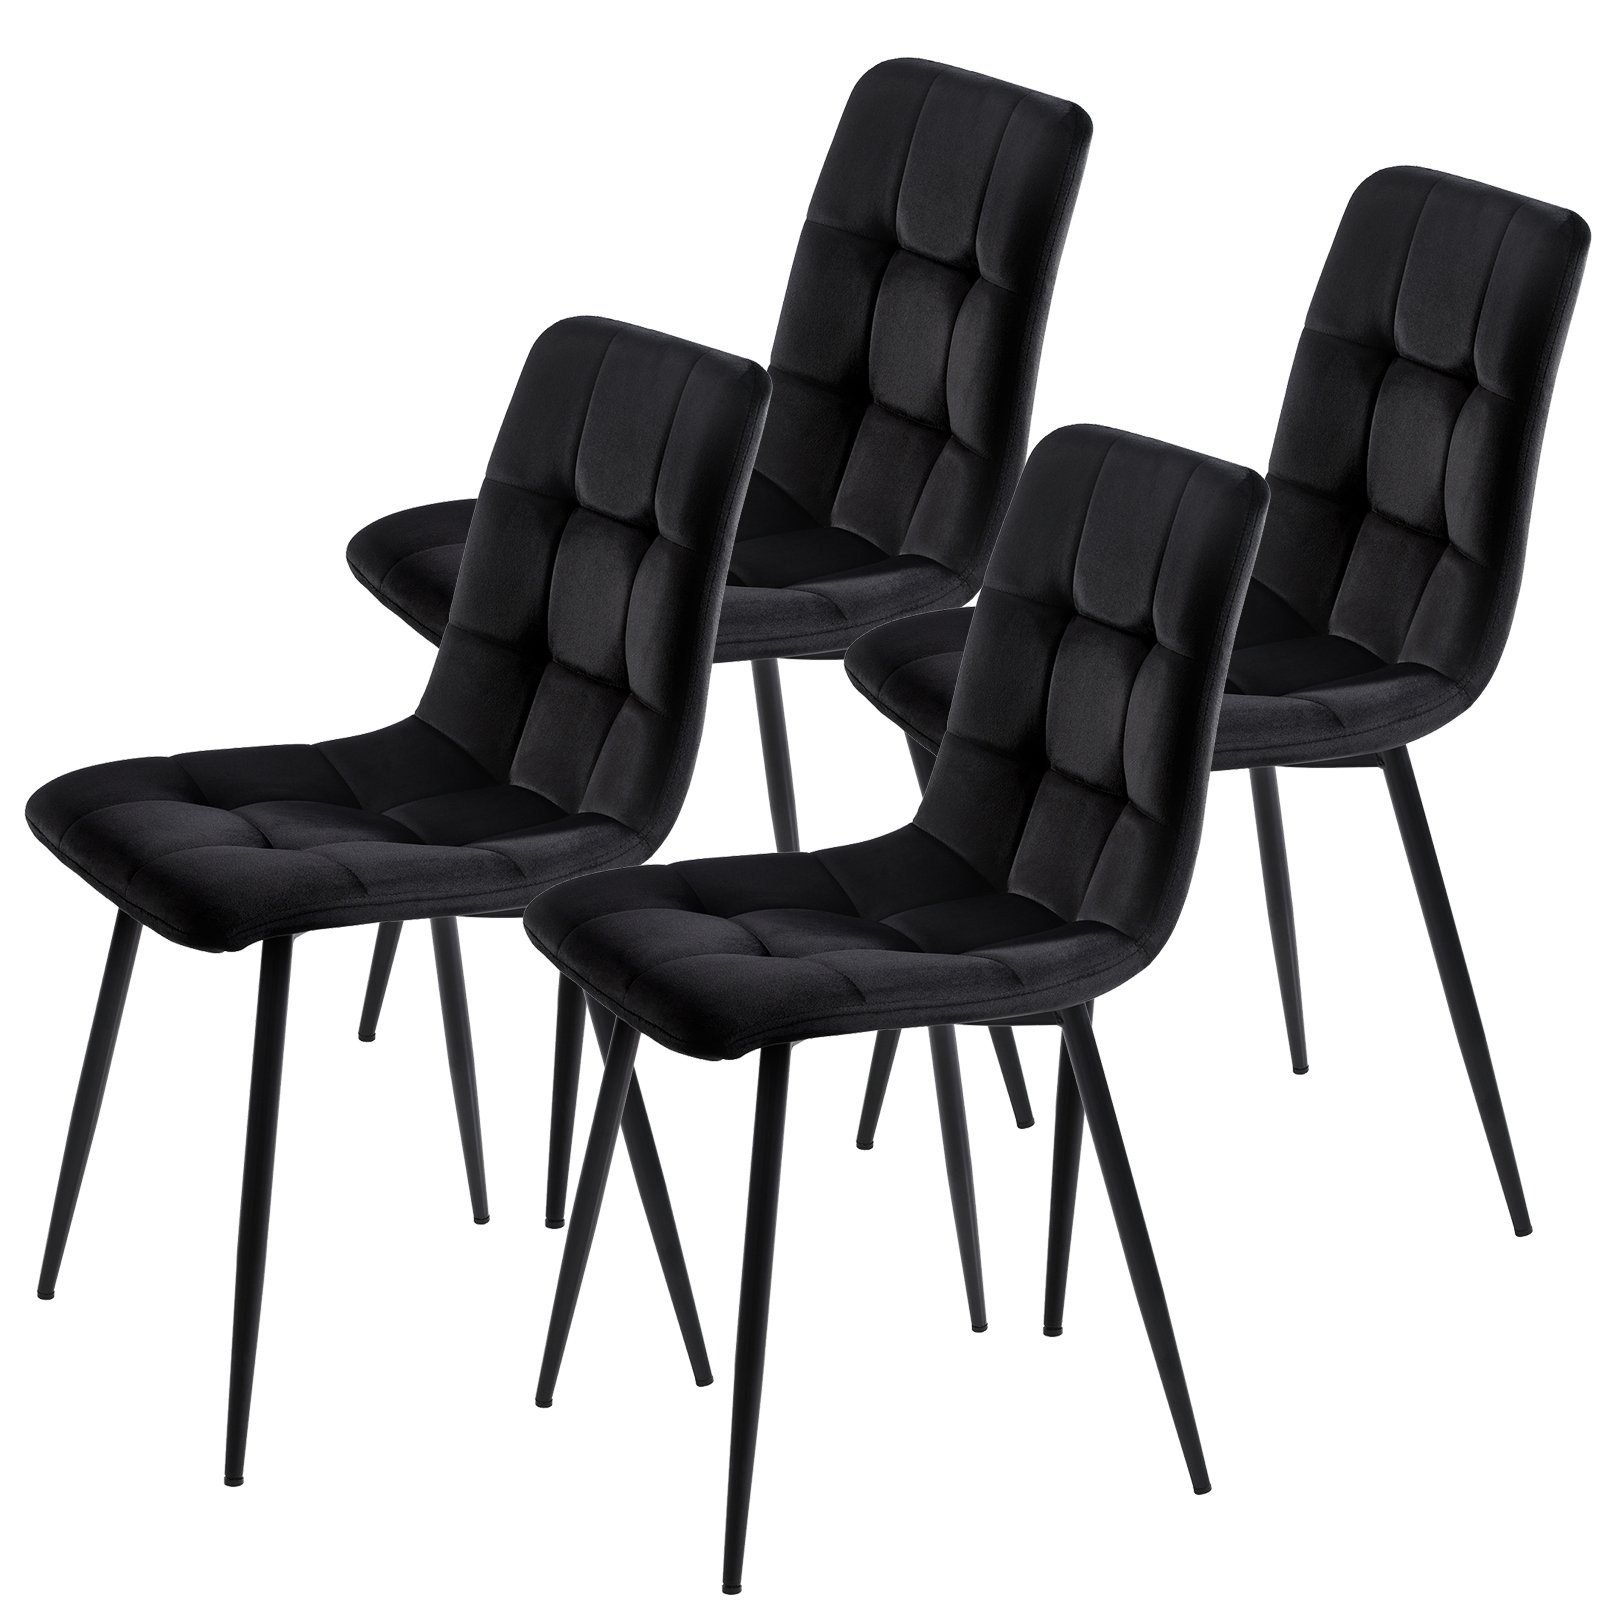 FUROKOY Esszimmerstuhl 4er Set Esszimmerstuhl Küchenstuhl Polsterstuhl,  Design Stuhl mit Rückenlehne,mit Sitzfläche Samt,Gestell aus Metall